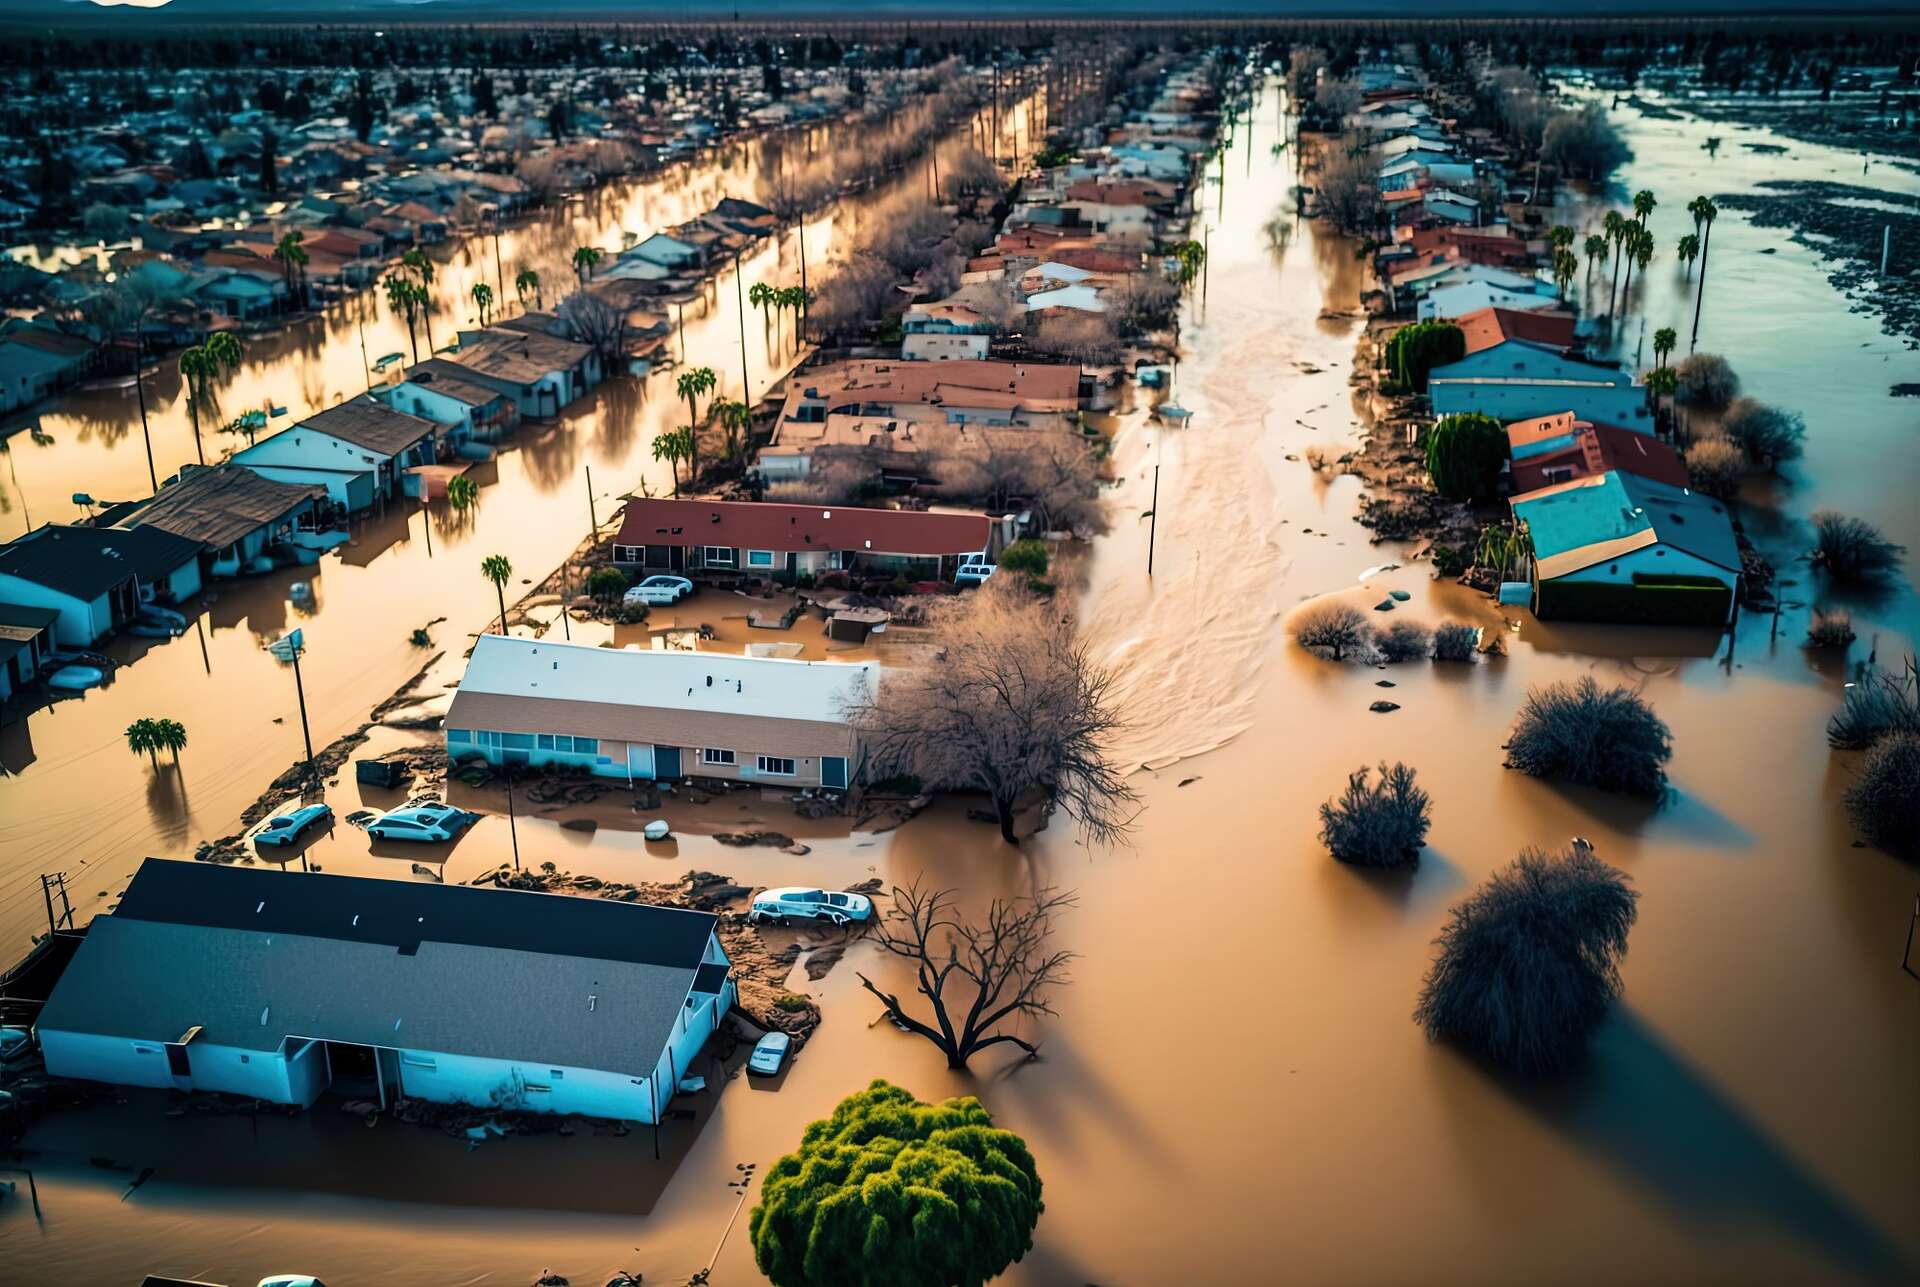 Inondations majeures : ces régions du monde qui doivent se préparer au pire avec le réchauffement climatique